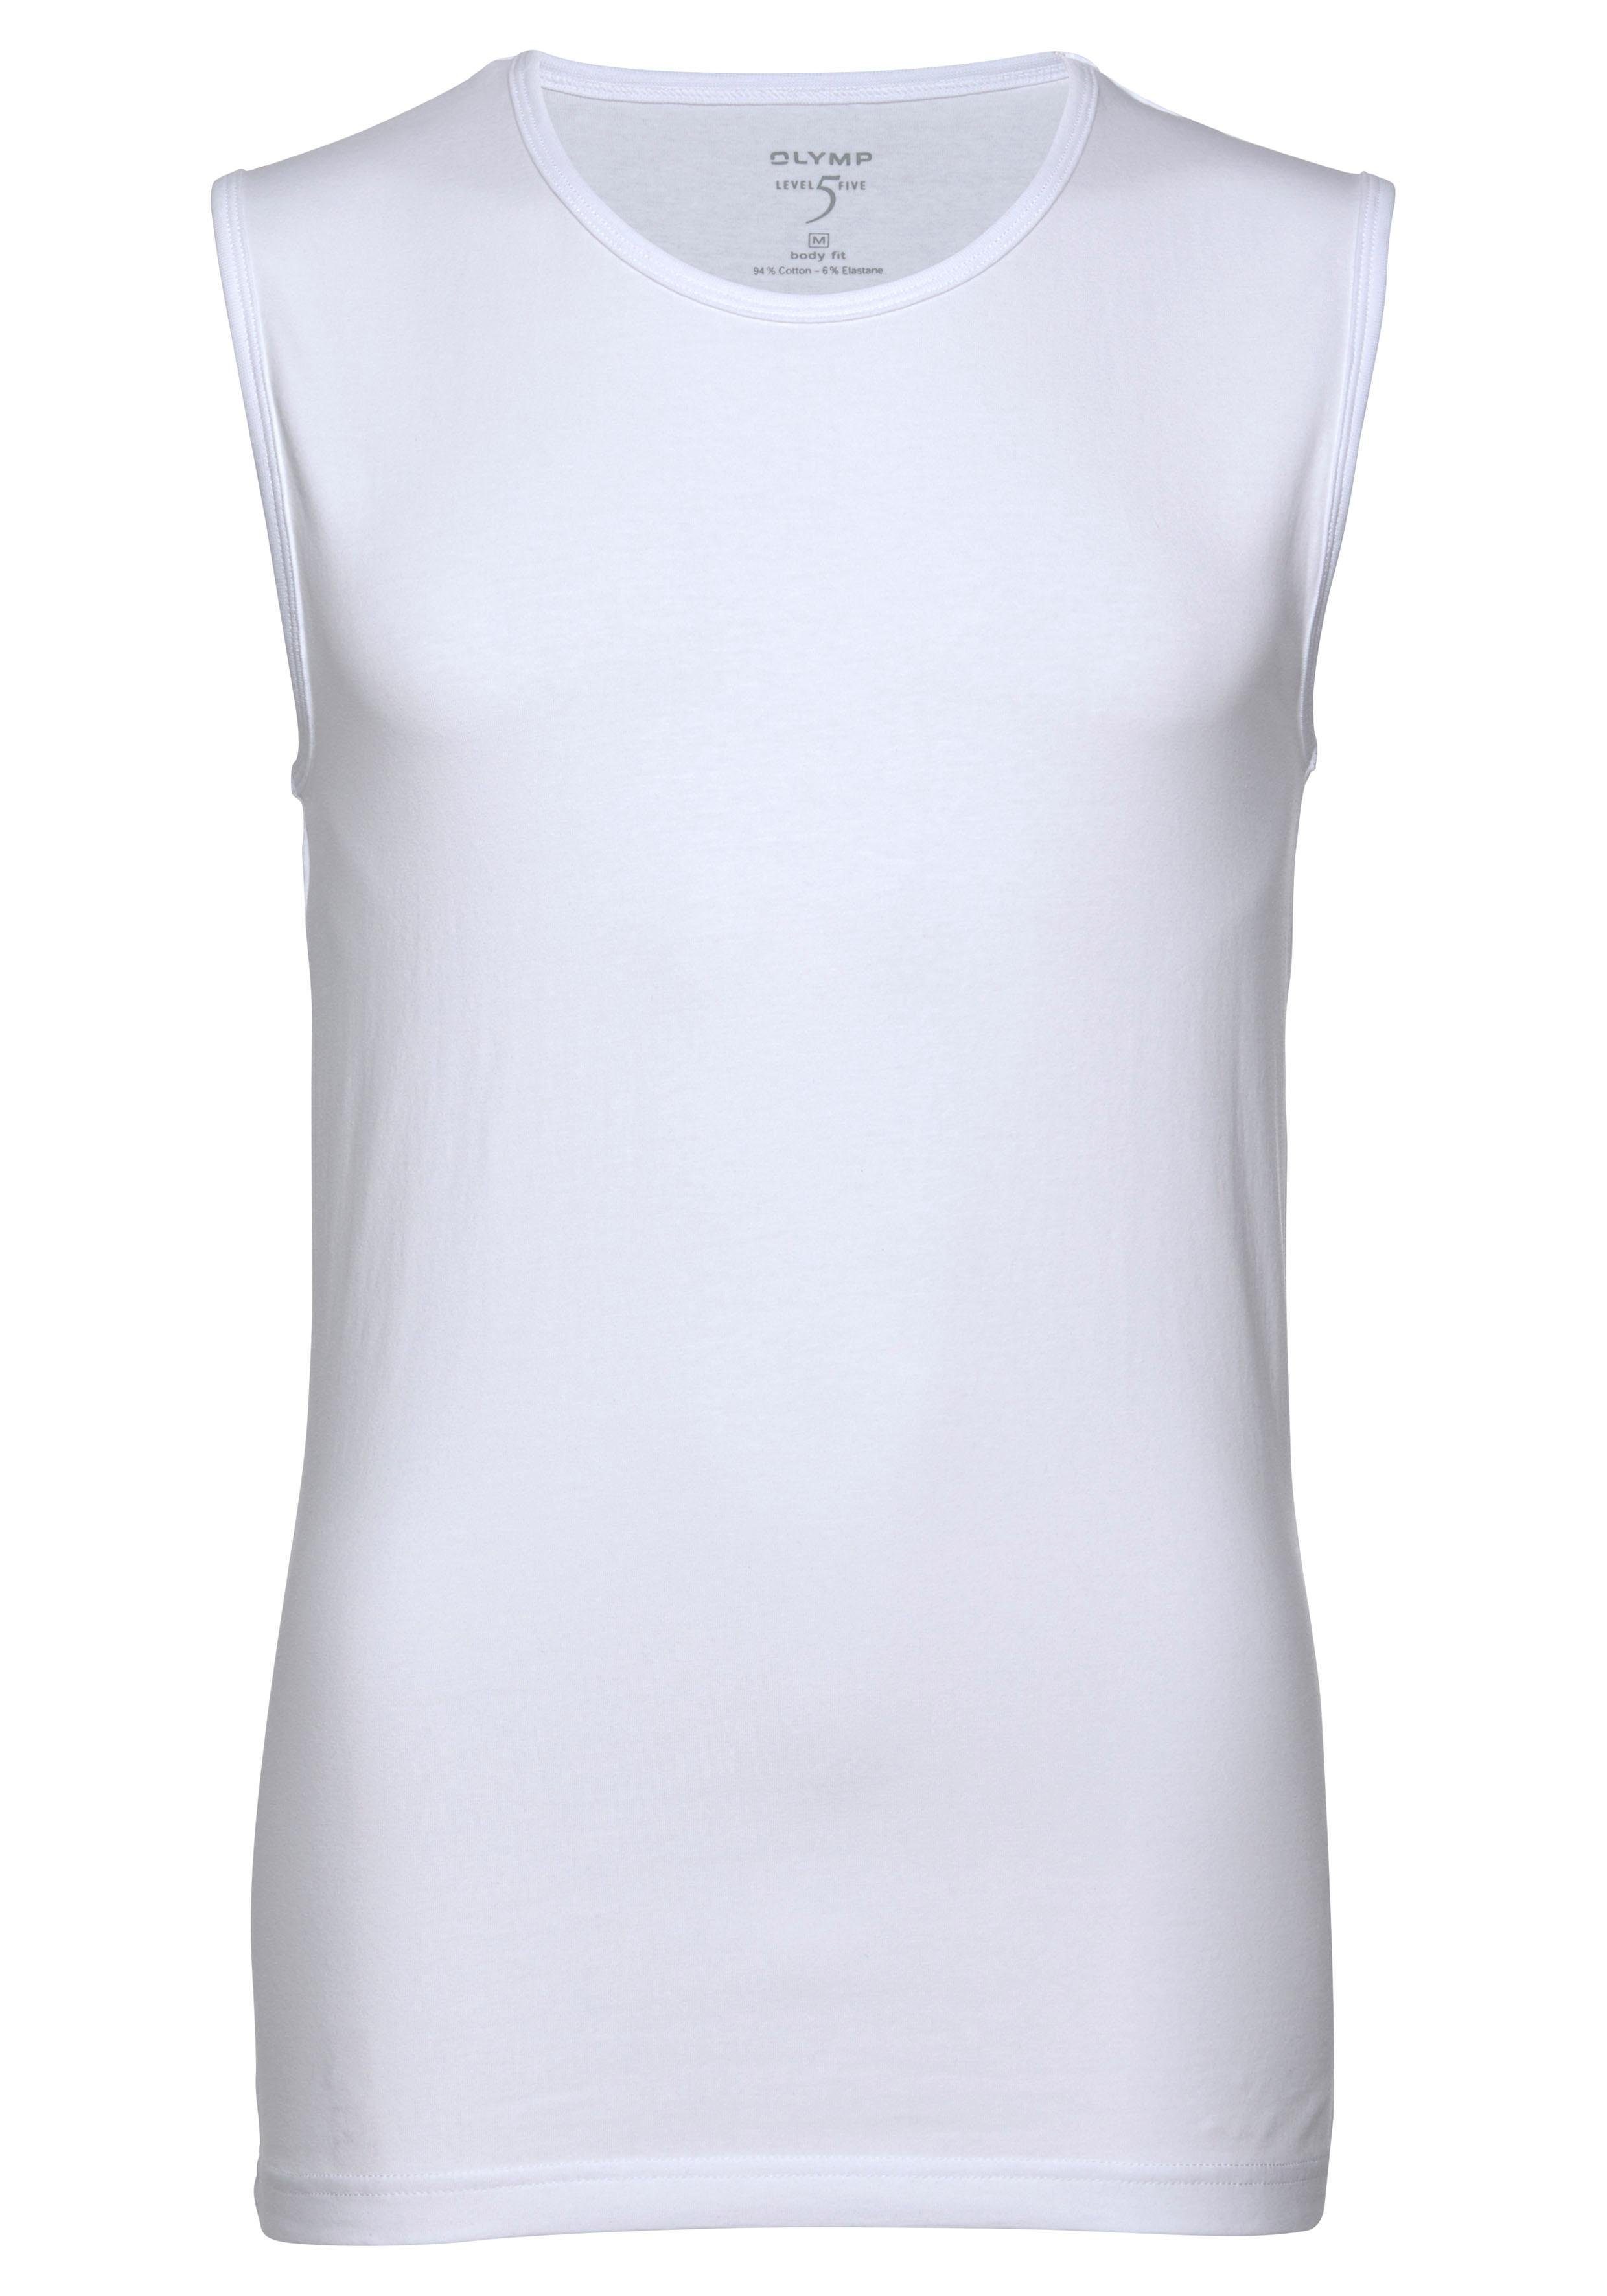 OLYMP T-Shirt body Level Five Unterziehen Ideal zum weiß fit Rundhalsausschnitt